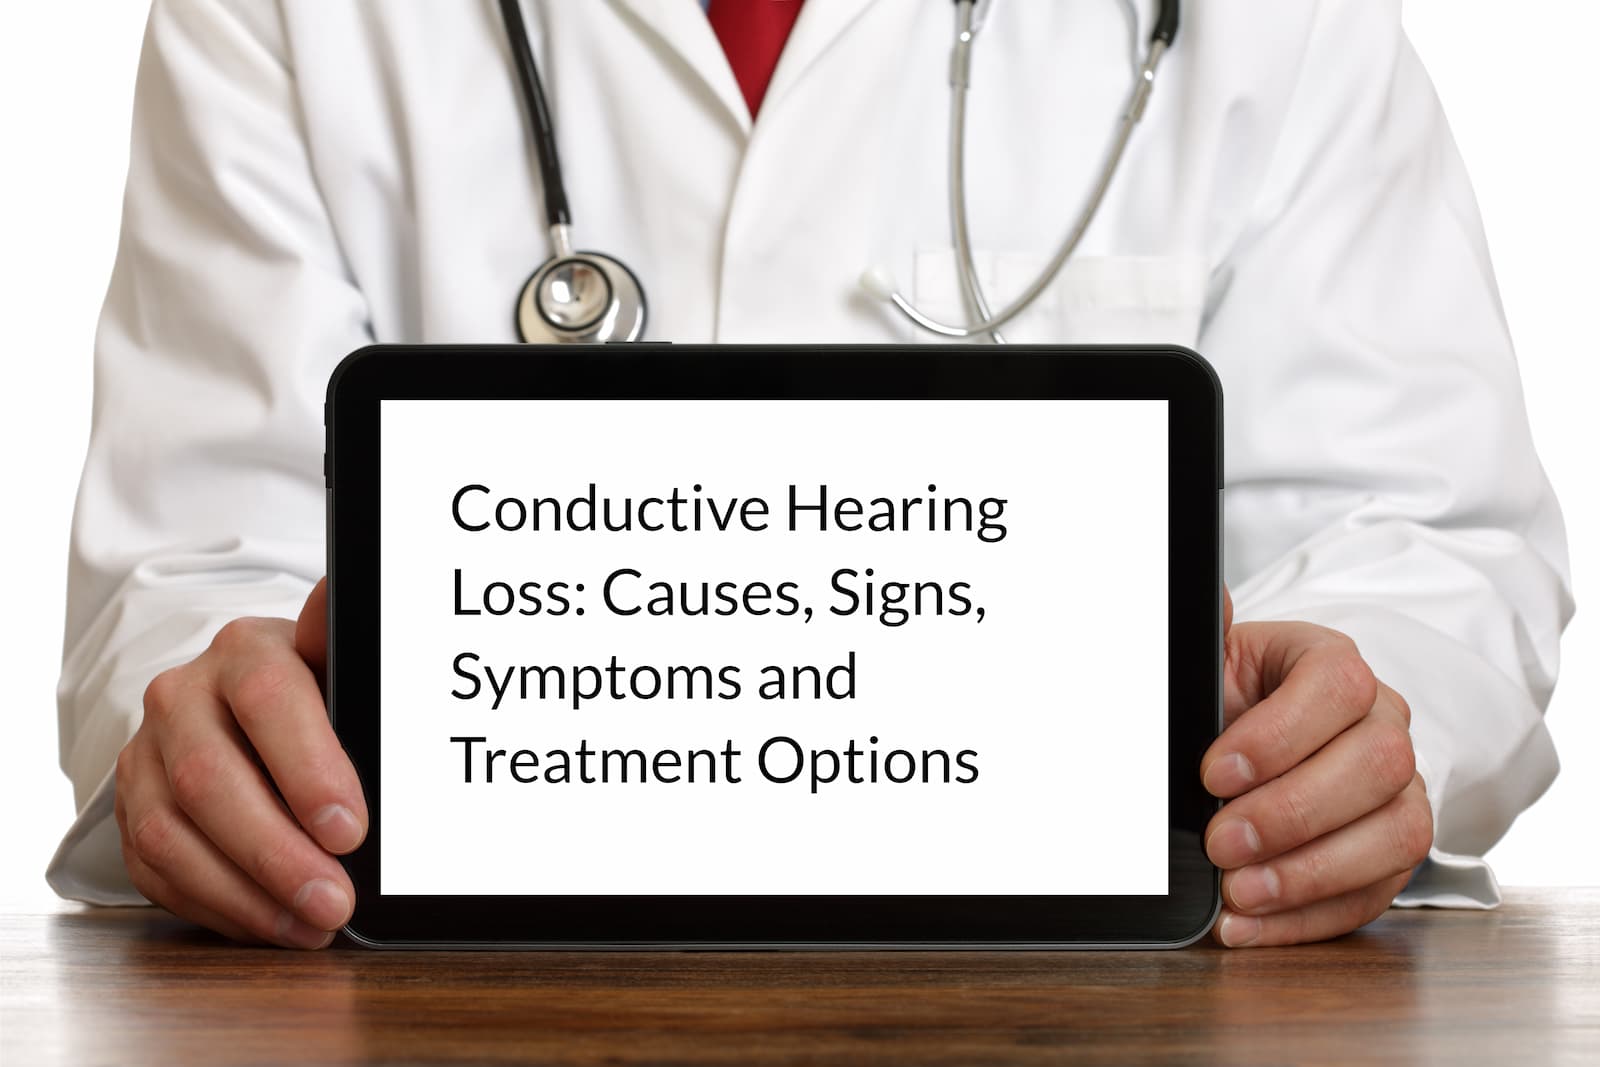 Conductive hearing loss1